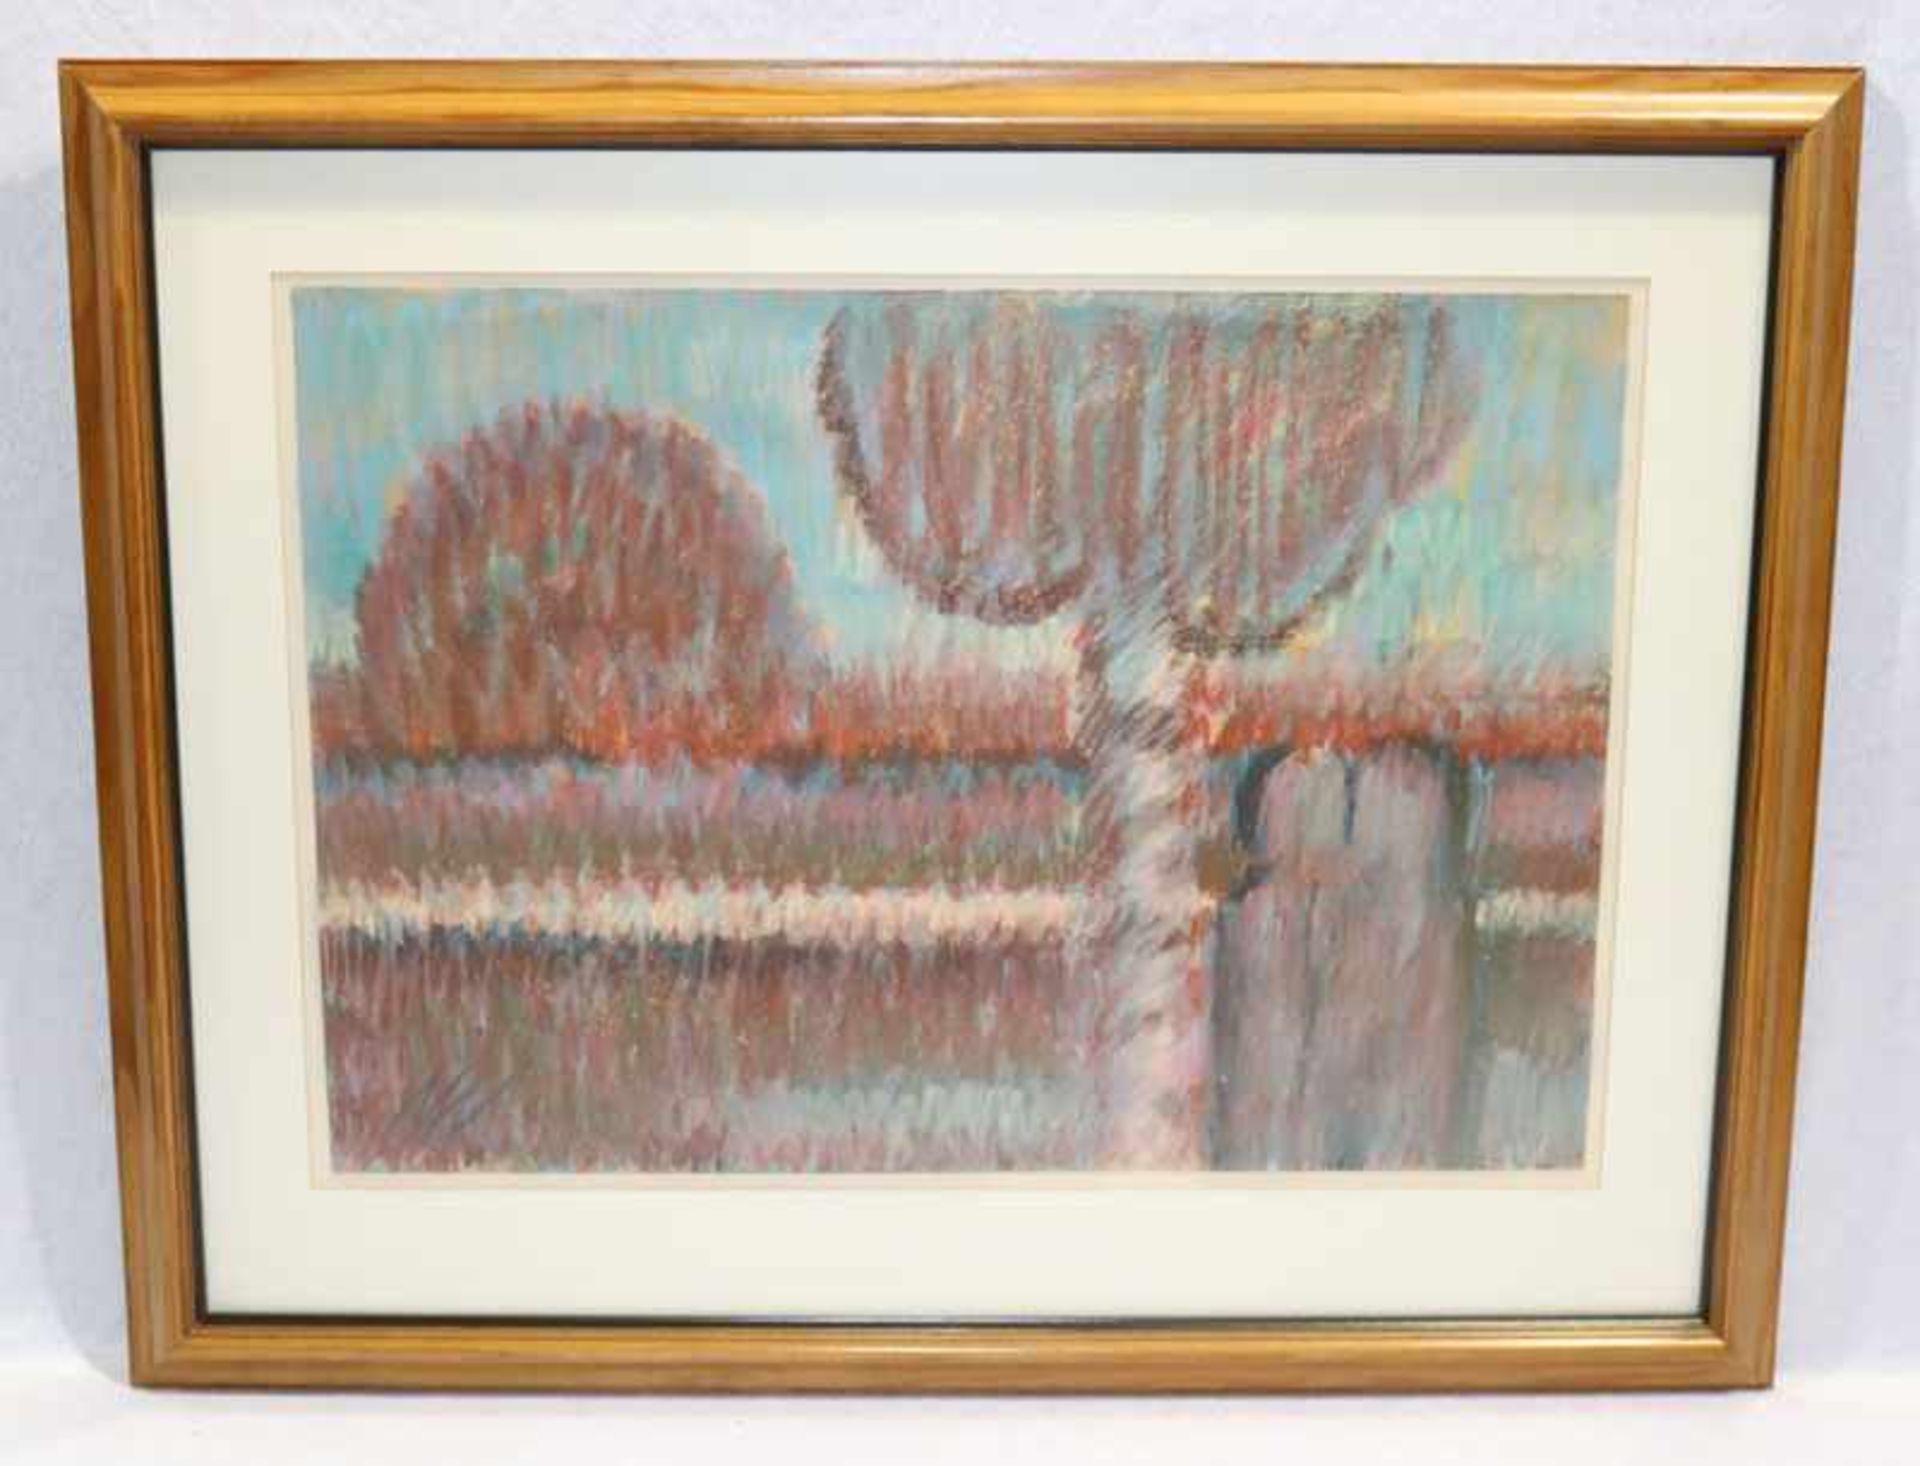 Gemälde Pastell 'Landschaft', monogrammiert MW, mit Passepartout unter Glas gerahmt, incl. Rahmen